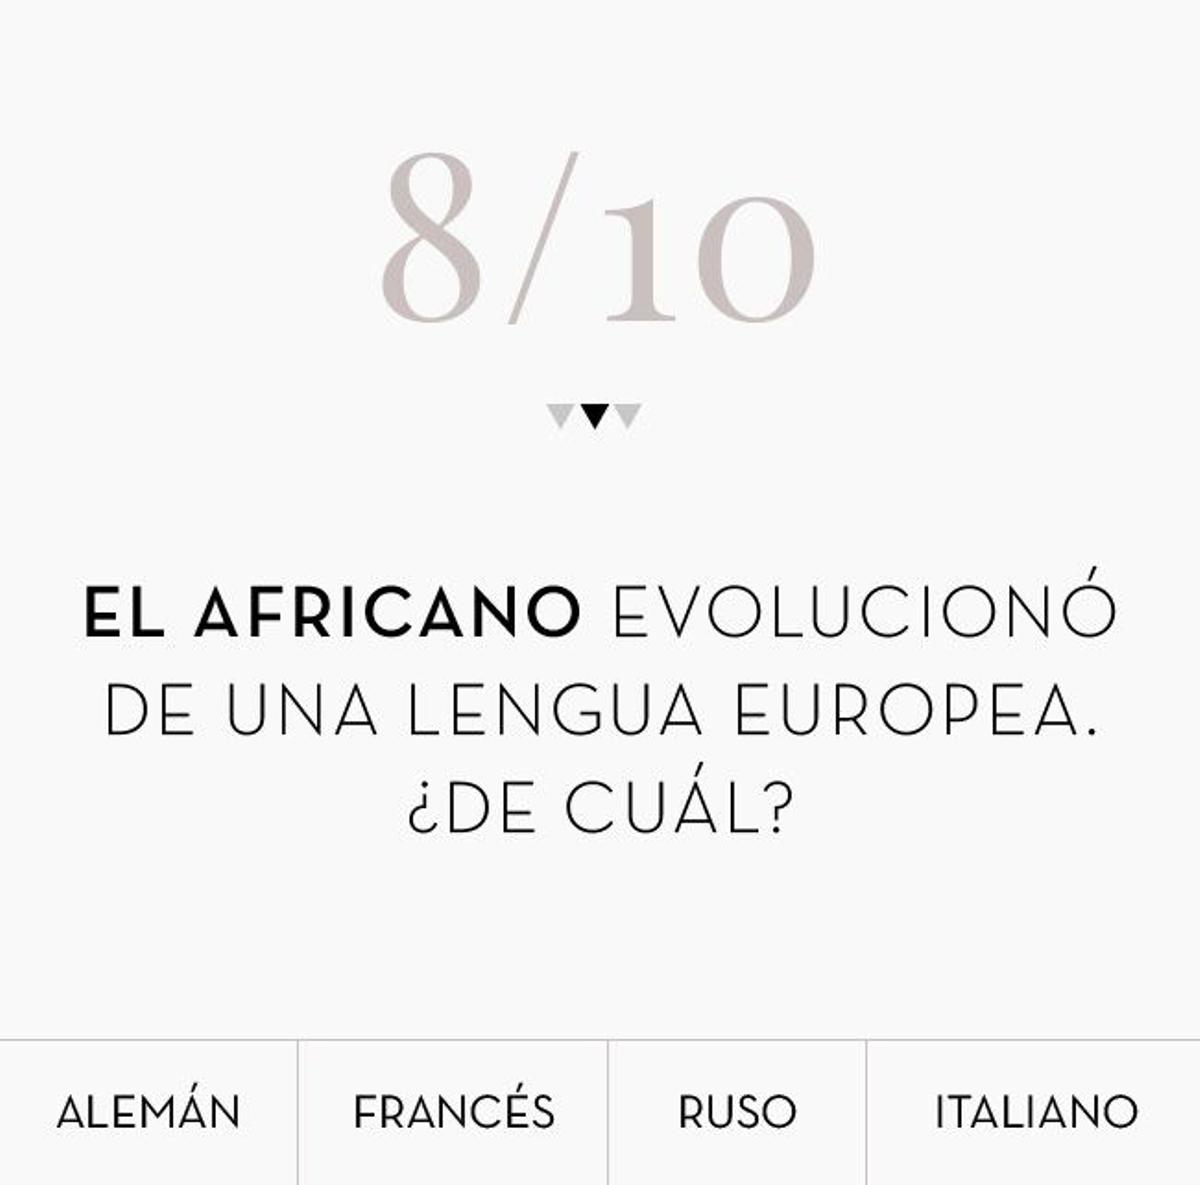 El africano evolucionó de una lengua europea